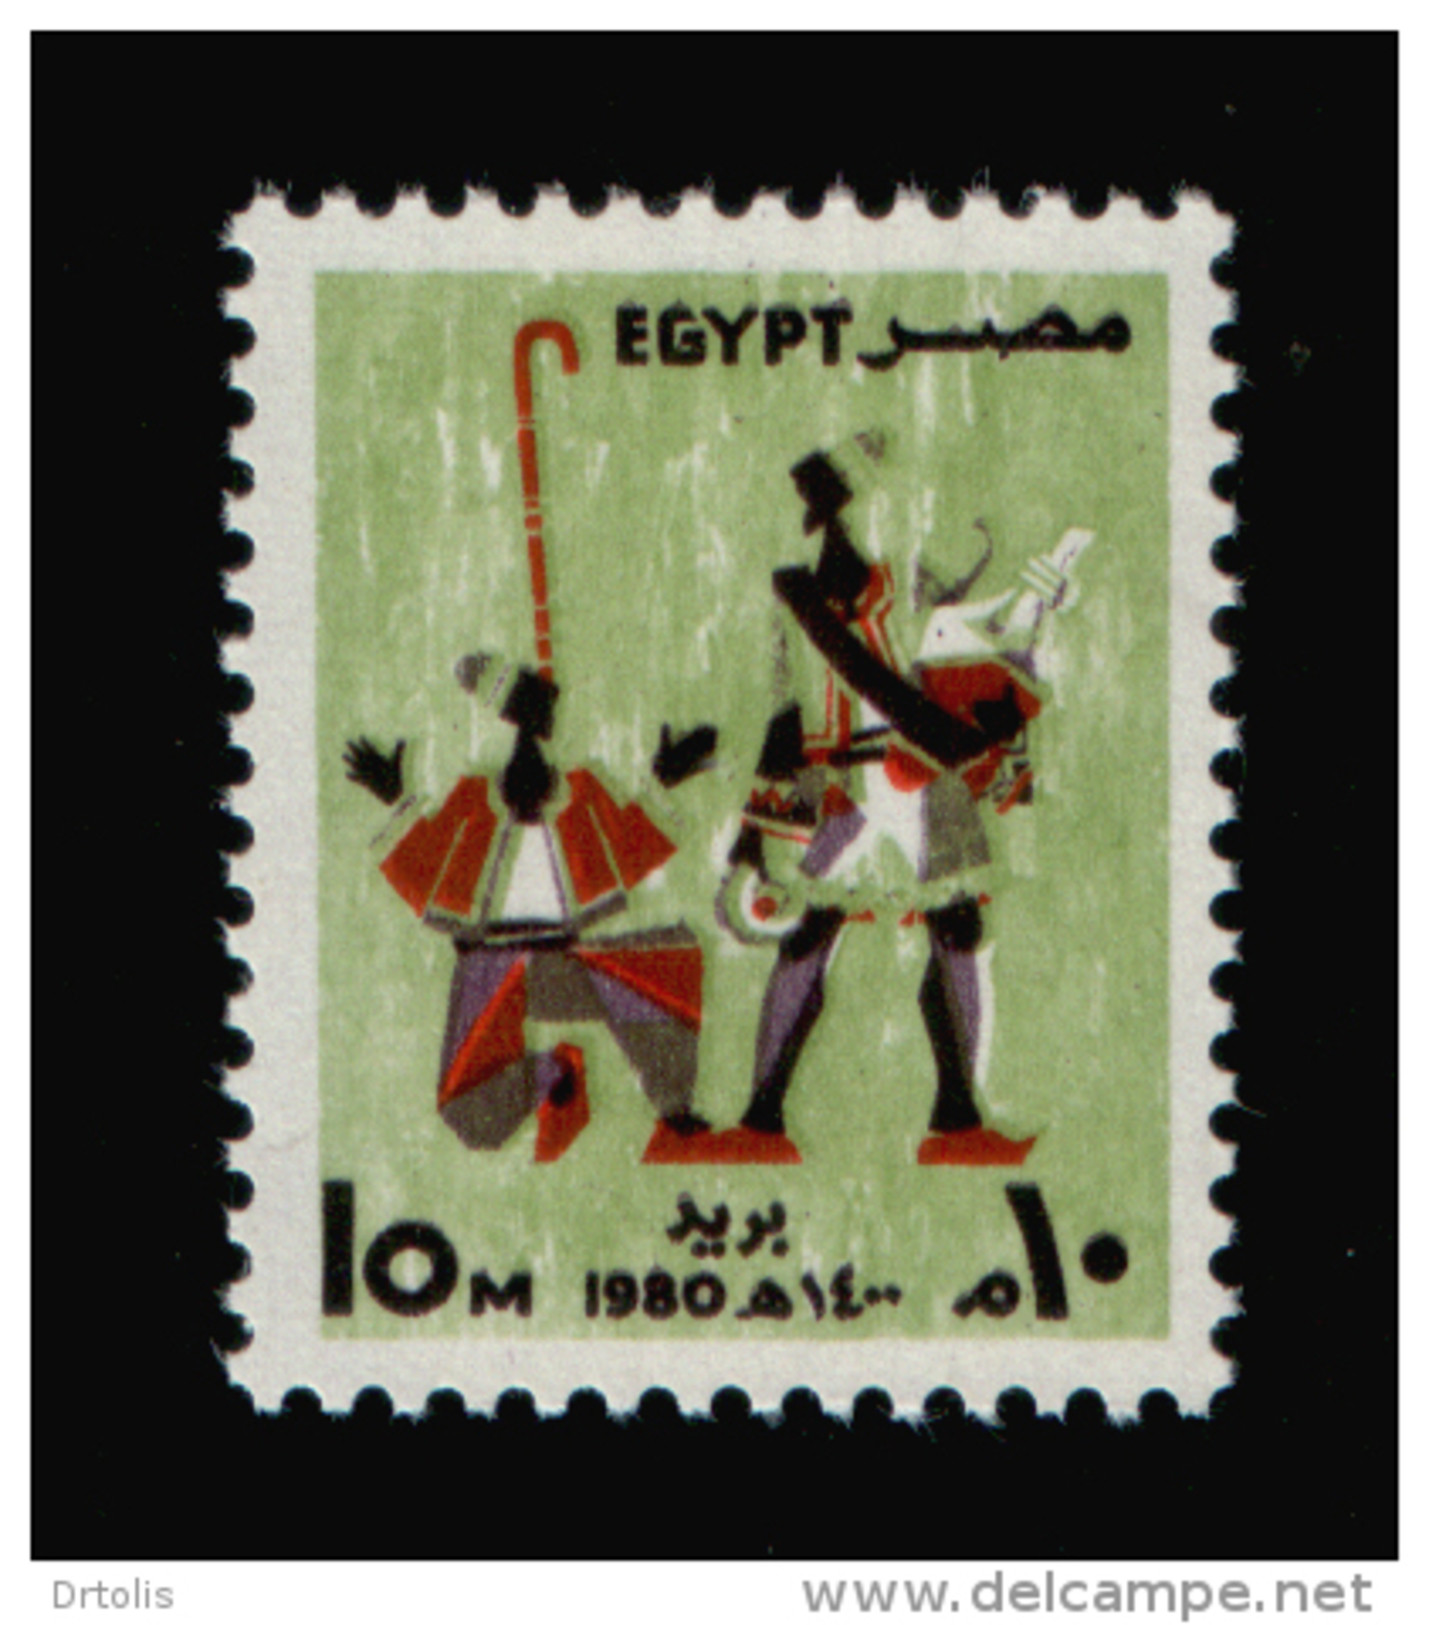 EGYPT / 1980 / FESTIVALS / ERKSOUS ( LICORICE ) SELLER / NAKRAZAN PLAYER / MNH / VF - Ungebraucht